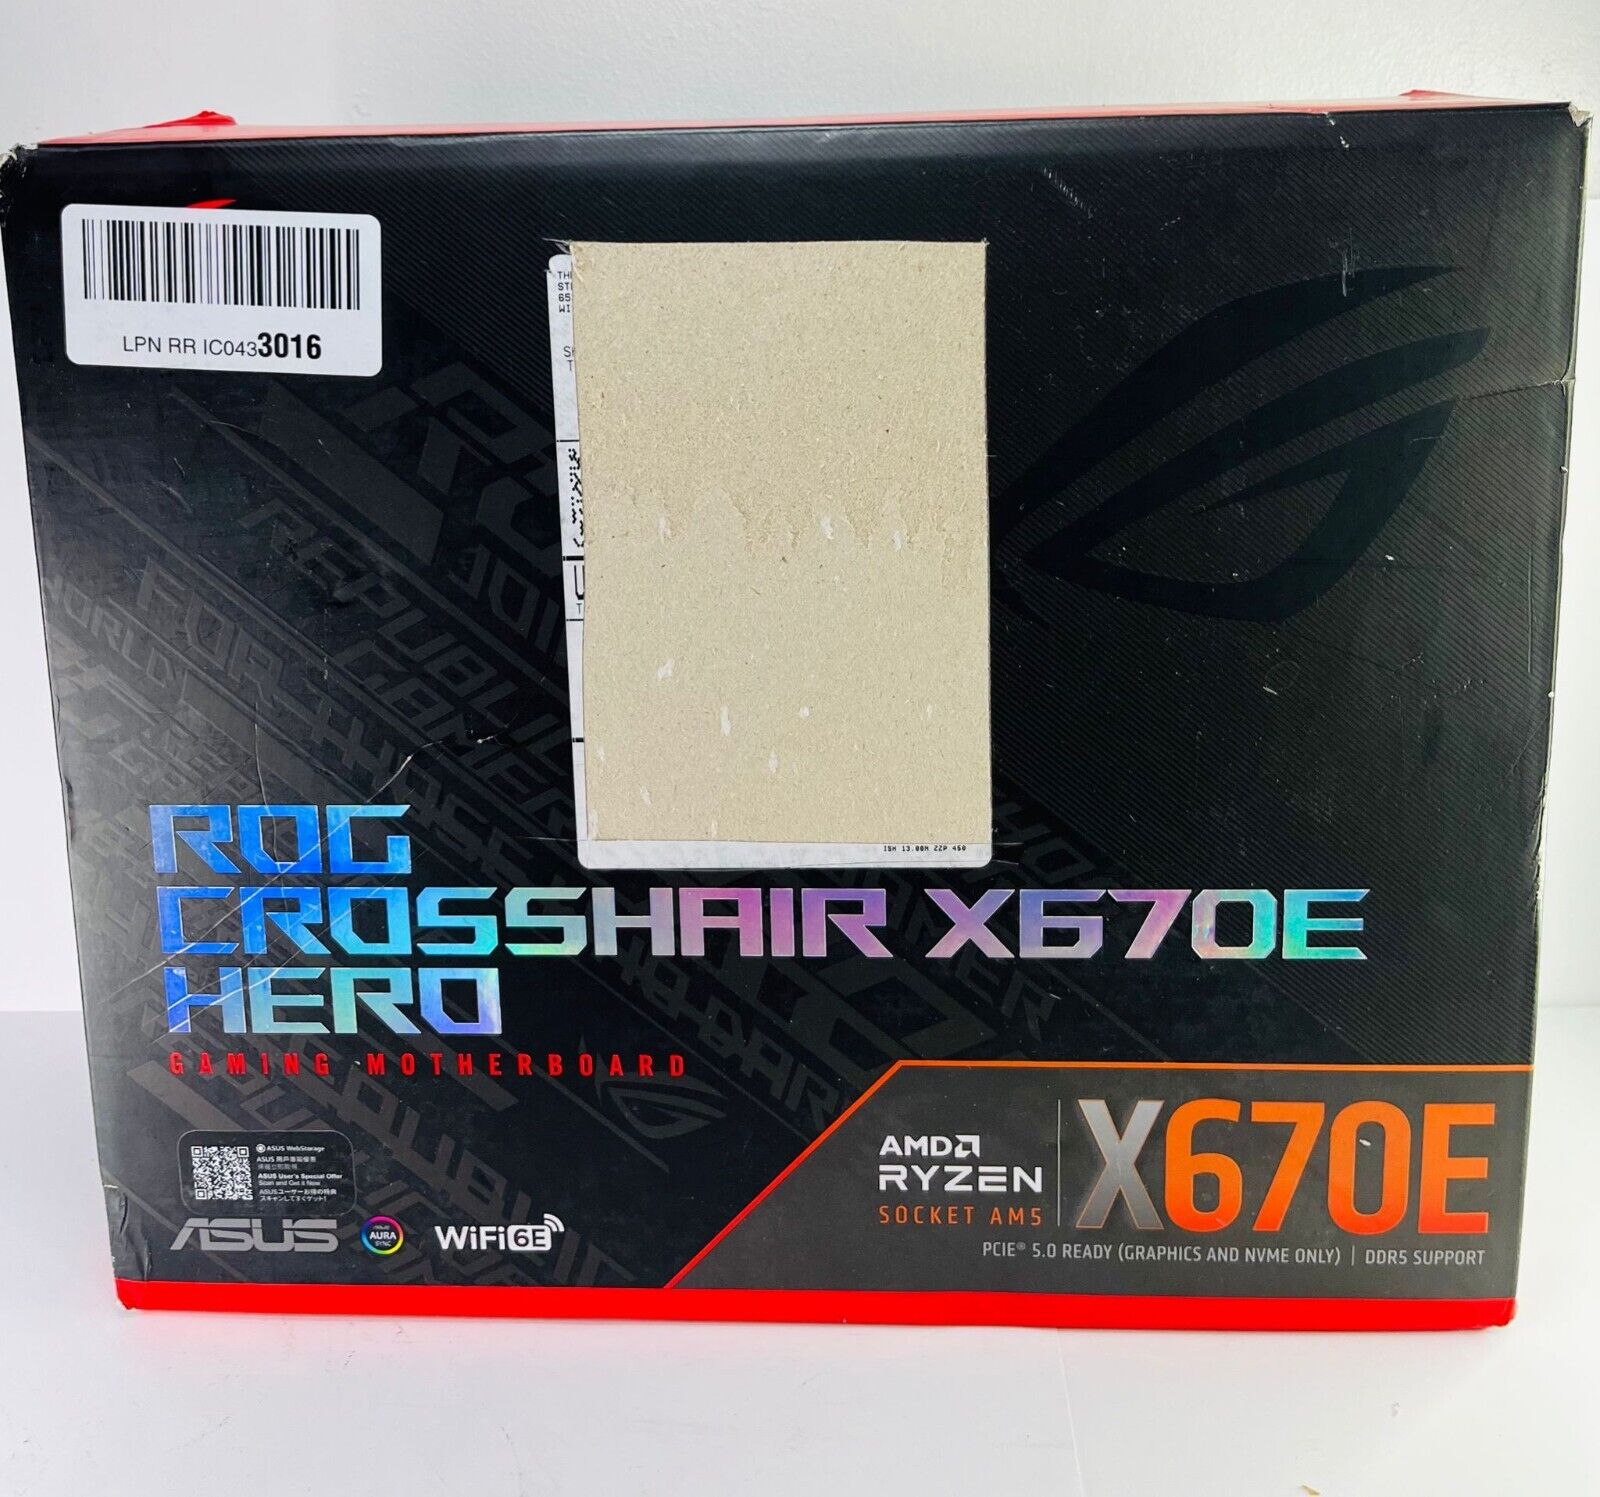 ASUS ROG Crosshair X670E Hero (WiFi 6E)